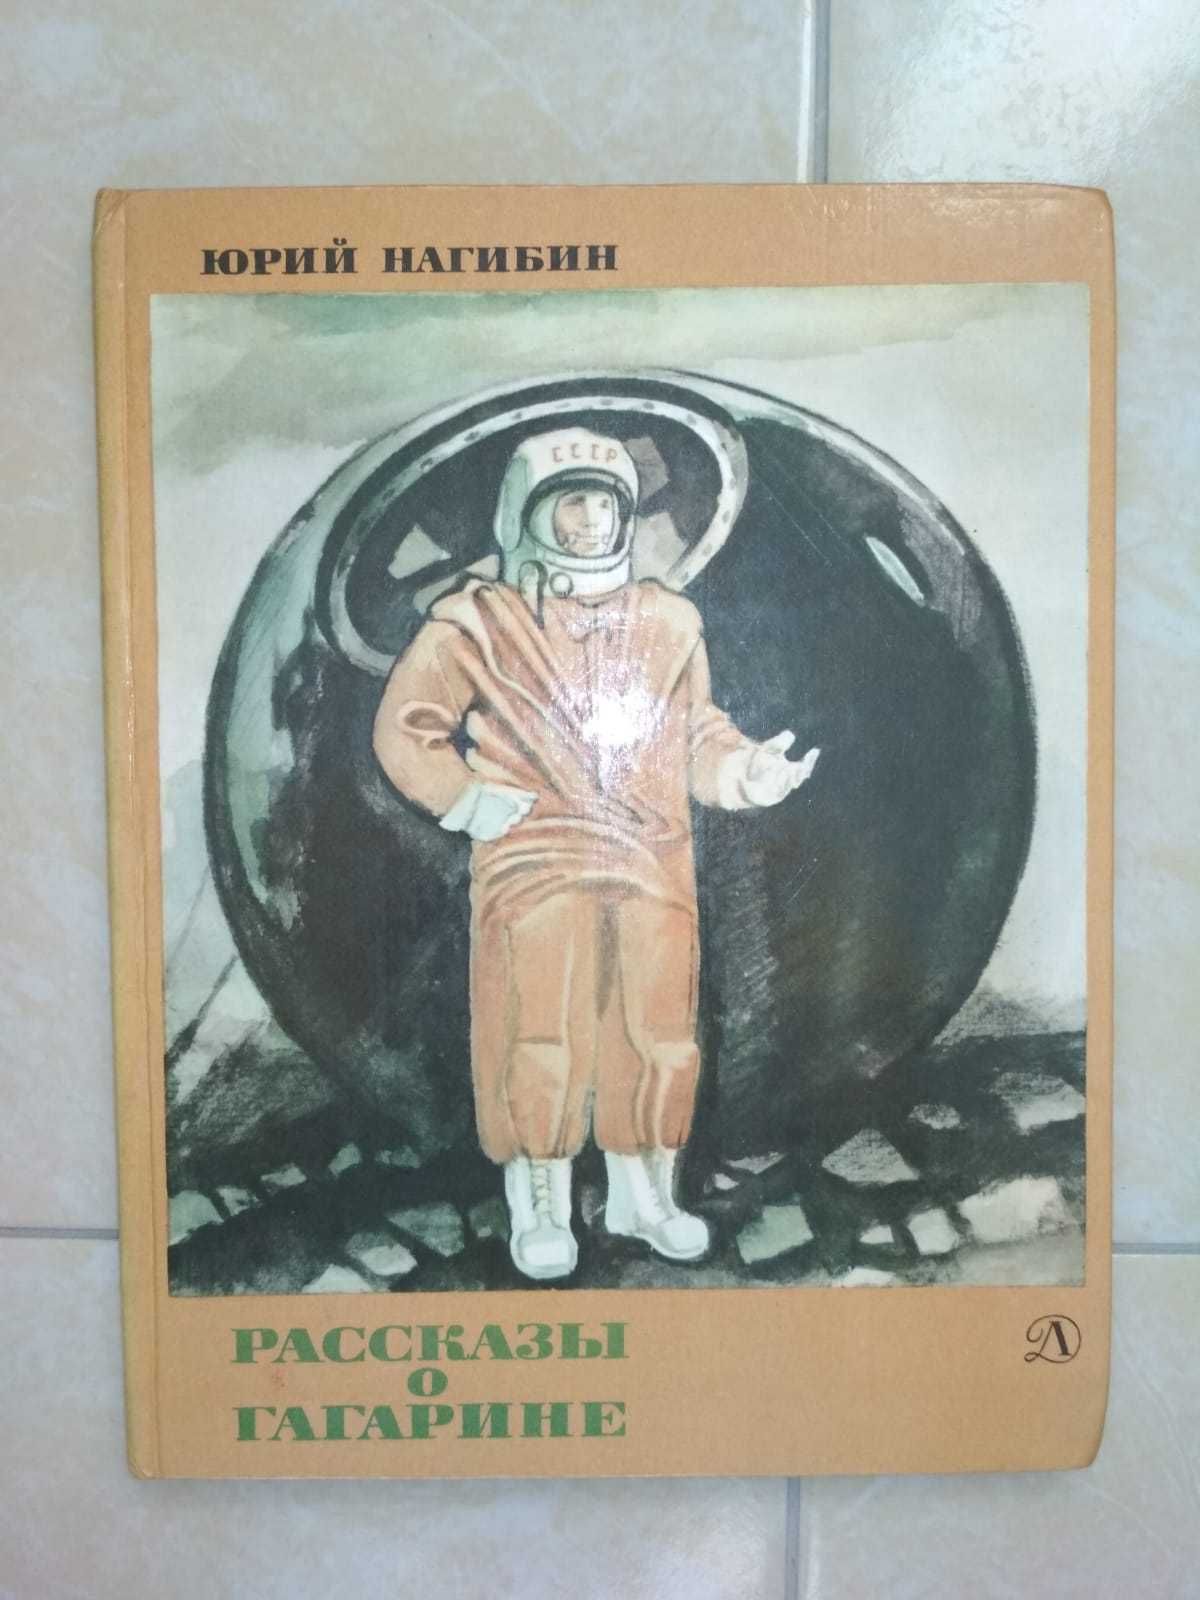 Книги разные, советских времен